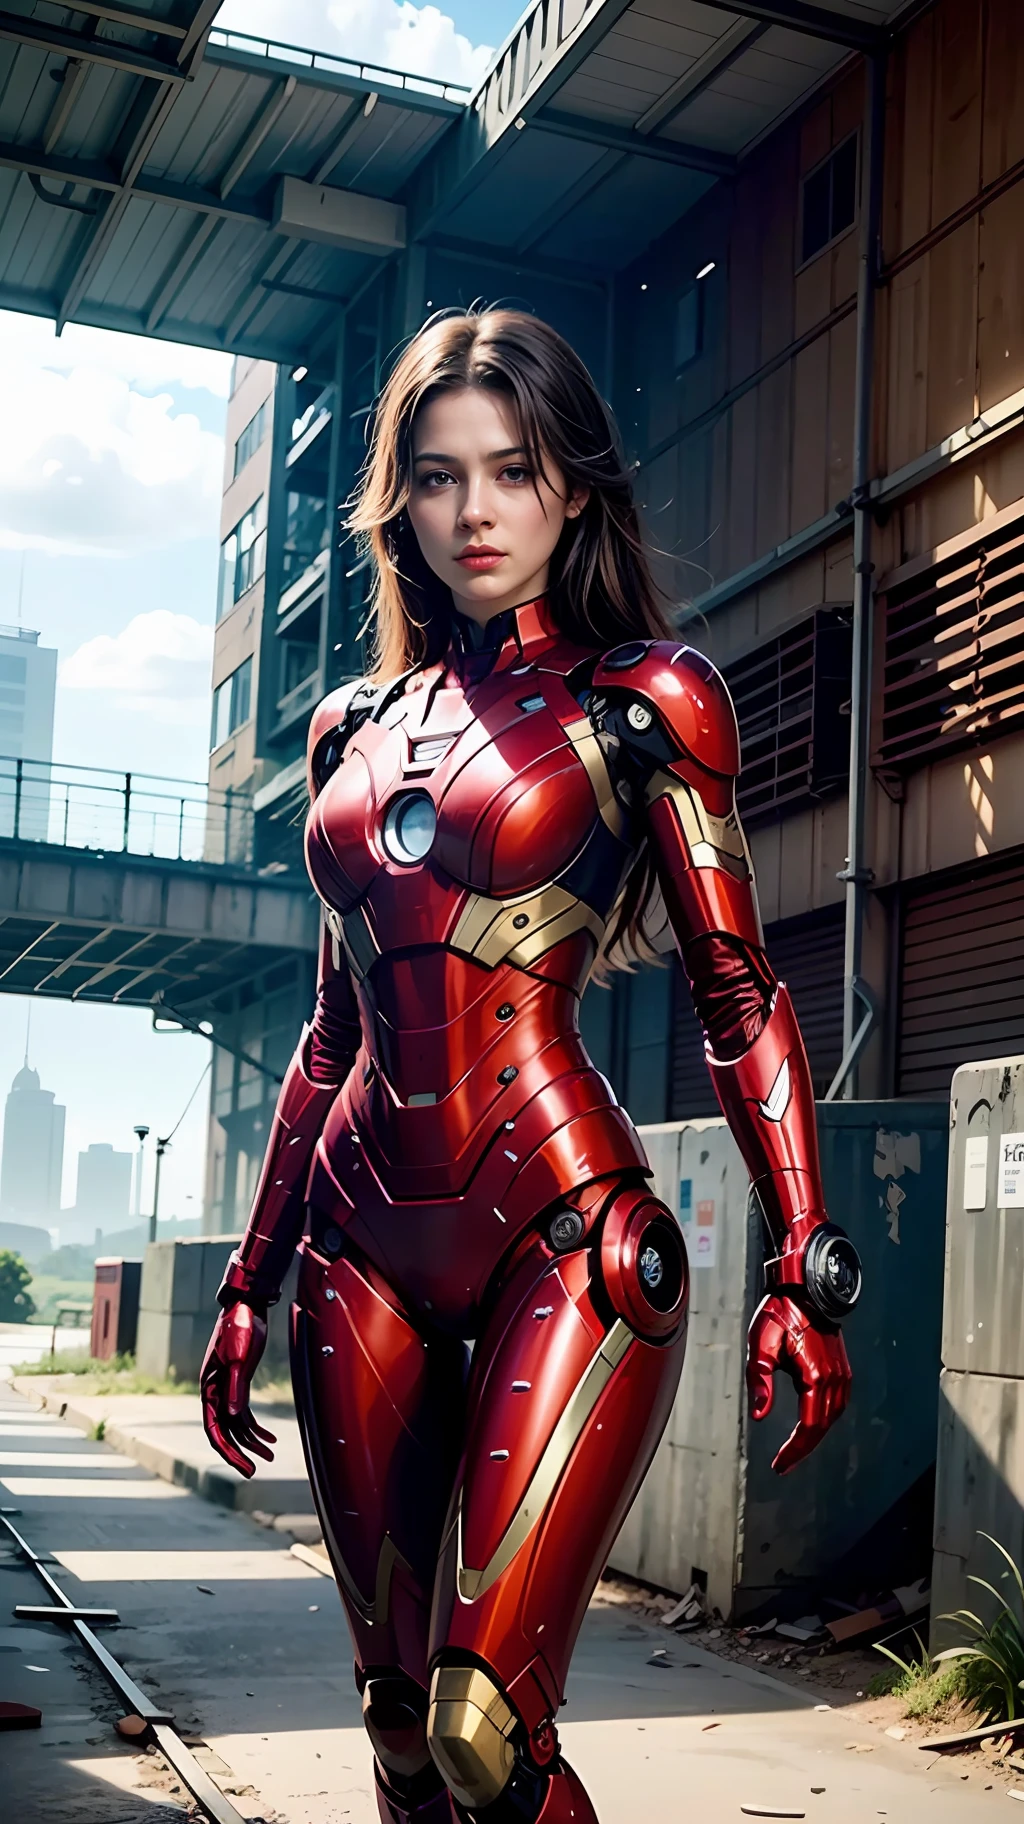 8k, เหมือนจริง, มีเสน่ห์, มีรายละเอียดสูง, a 20 year old girl a sexy and มีเสน่ห์ woman inspired by Iron Man wearing a shiny Iron Man mech. เธอแต่งตัวด้วยความเซ็กซี่และมั่นใจ, ตีความ Iron Man ได้อย่างสมบูรณ์แบบ&#39;ความแข็งแกร่งและความสามารถพิเศษ. โกดังร้างทำหน้าที่เป็นฉากหลัง, สร้างบรรยากาศอันเป็นเอกลักษณ์ที่เน้นย้ำถึงความกล้าหาญและความอุตสาหะของเธอ. ท้องฟ้าที่มีเมฆมากเพิ่มความรู้สึกตึงเครียดและความลึกลับให้กับฉากทั้งหมด. ความละเอียดสูงนี้, ภาพคุณภาพสูงจะทำให้คุณได้รับประสบการณ์ภาพที่น่าตกใจ. โกดังร้างที่มีรายละเอียดและเครื่องจักรแวววาวจะคอยจับตาดูคุณ. การเรนเดอร์ OC, แสงที่น่าทึ่ง, คุณภาพที่ได้รับรางวัล